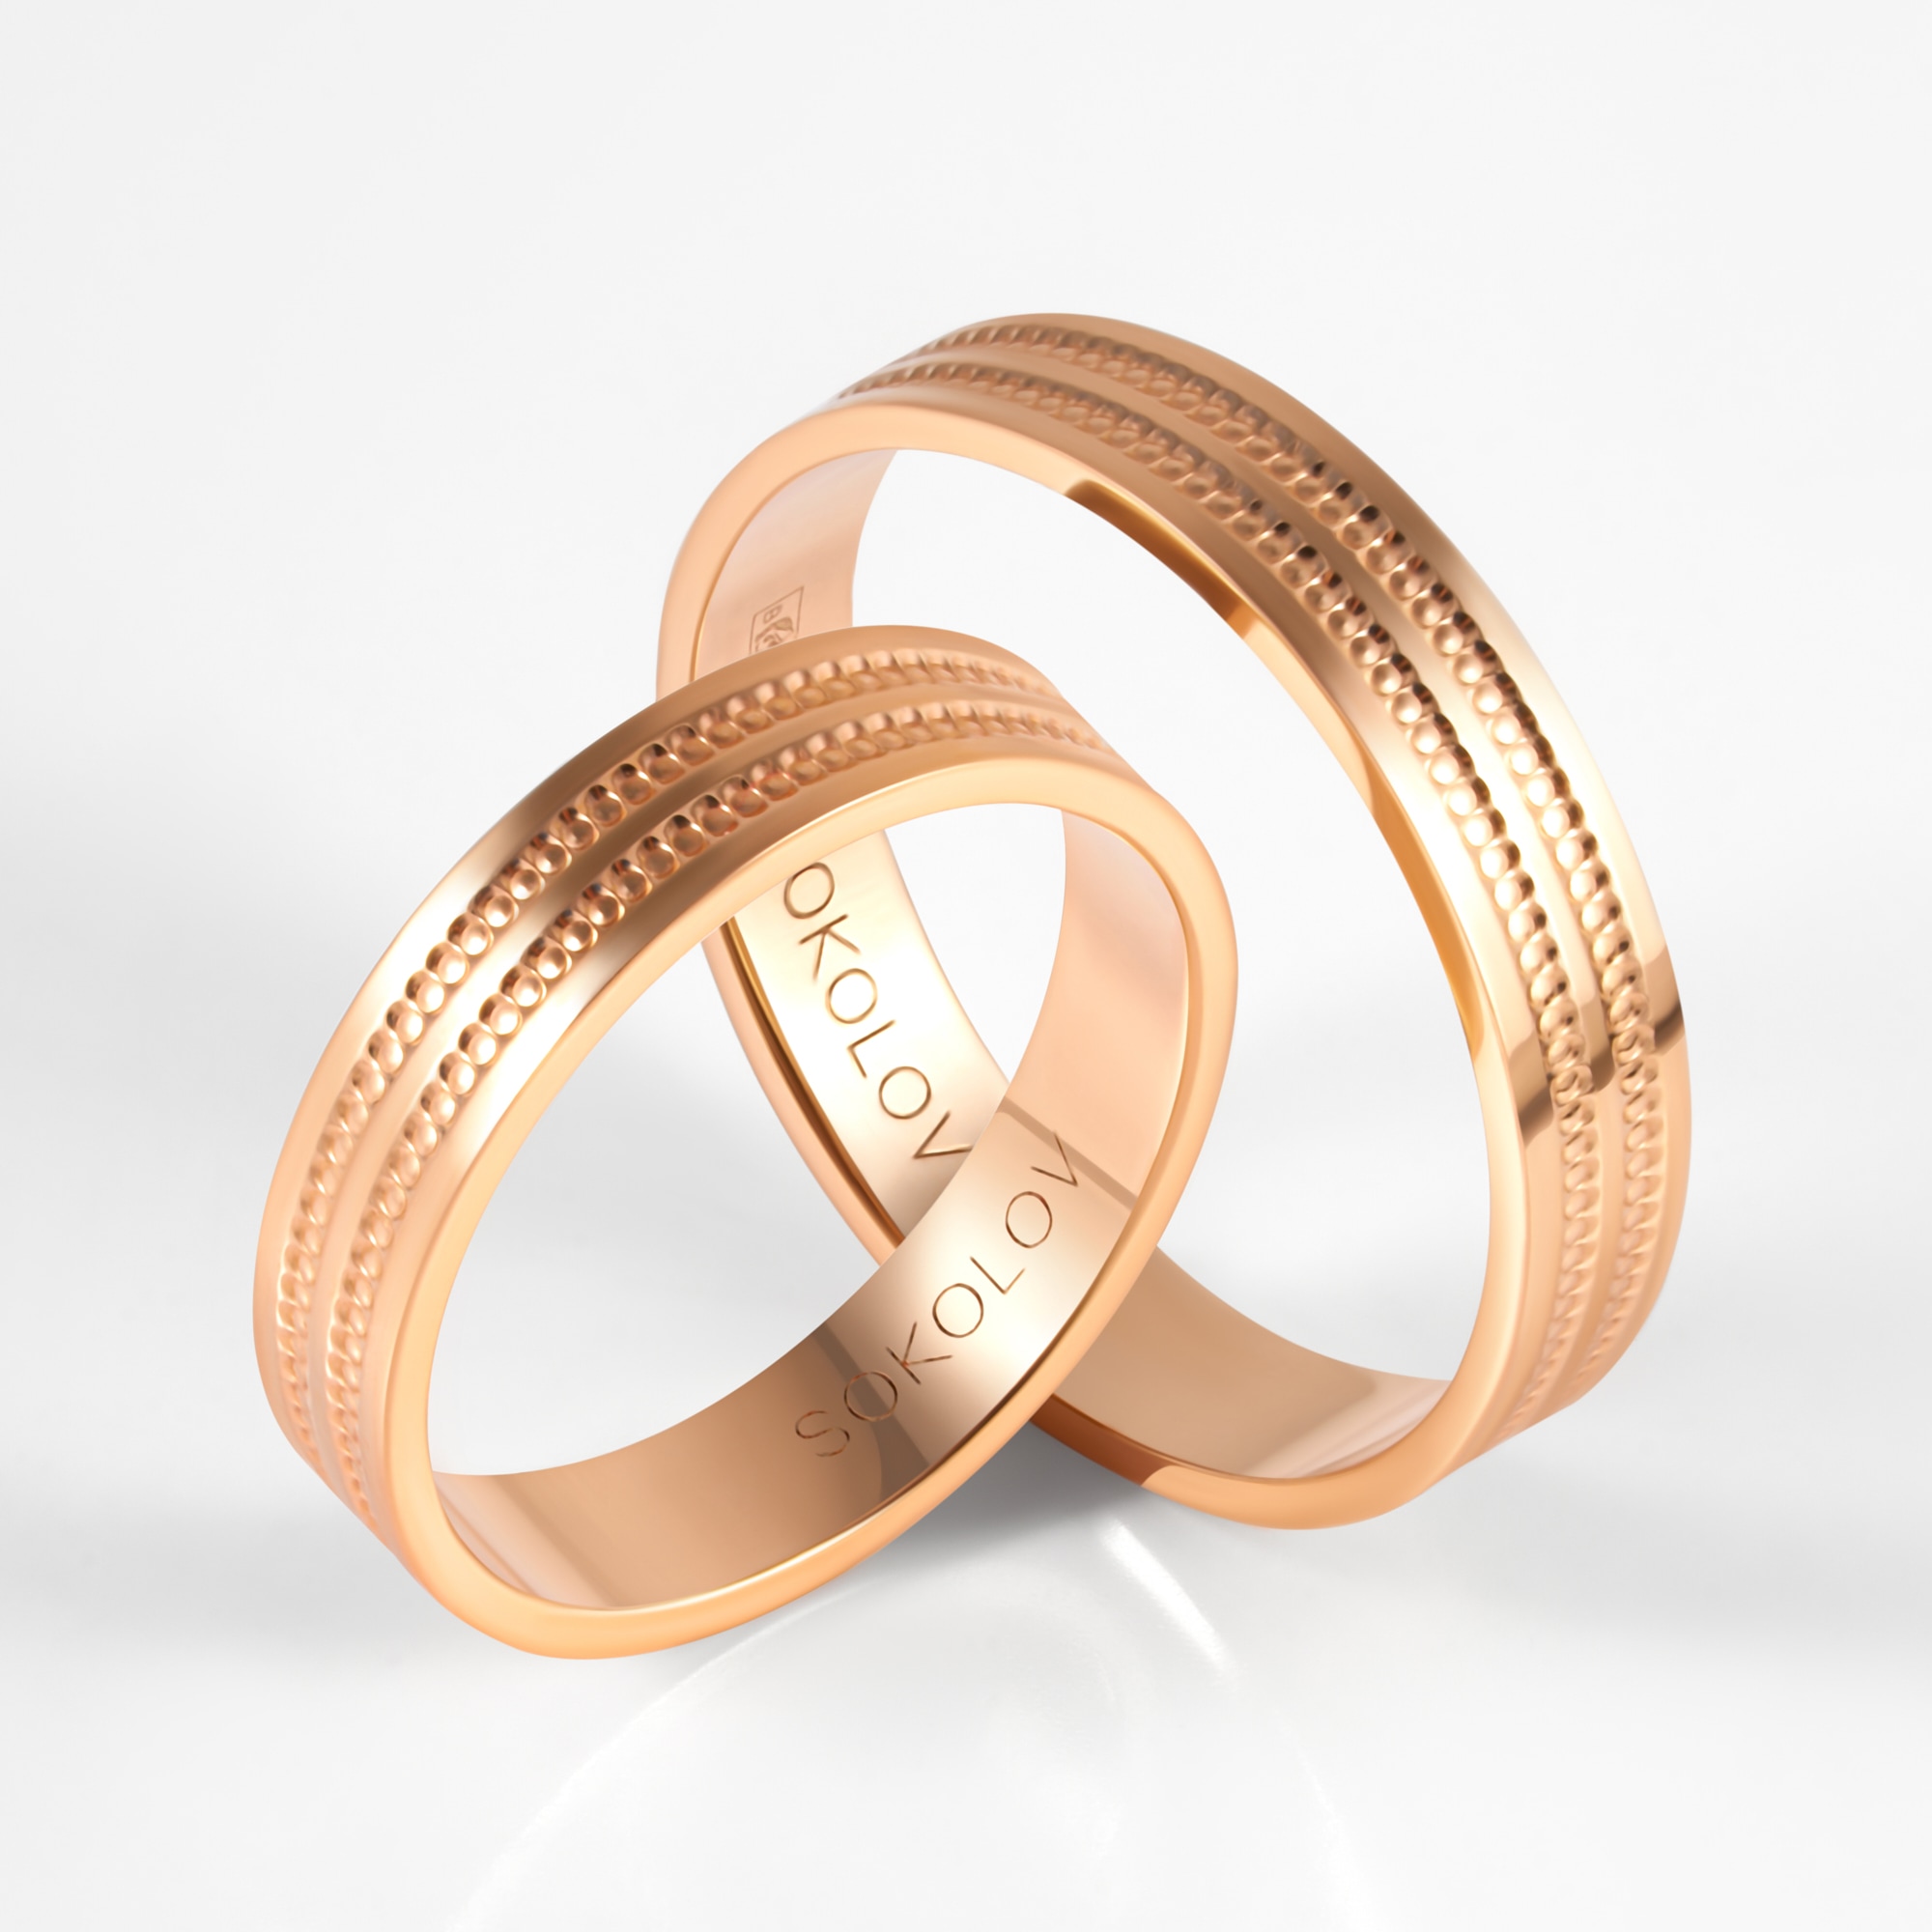 Сонник Золотые кольца : к чему снятся Золотые кольца женщине или мужчине